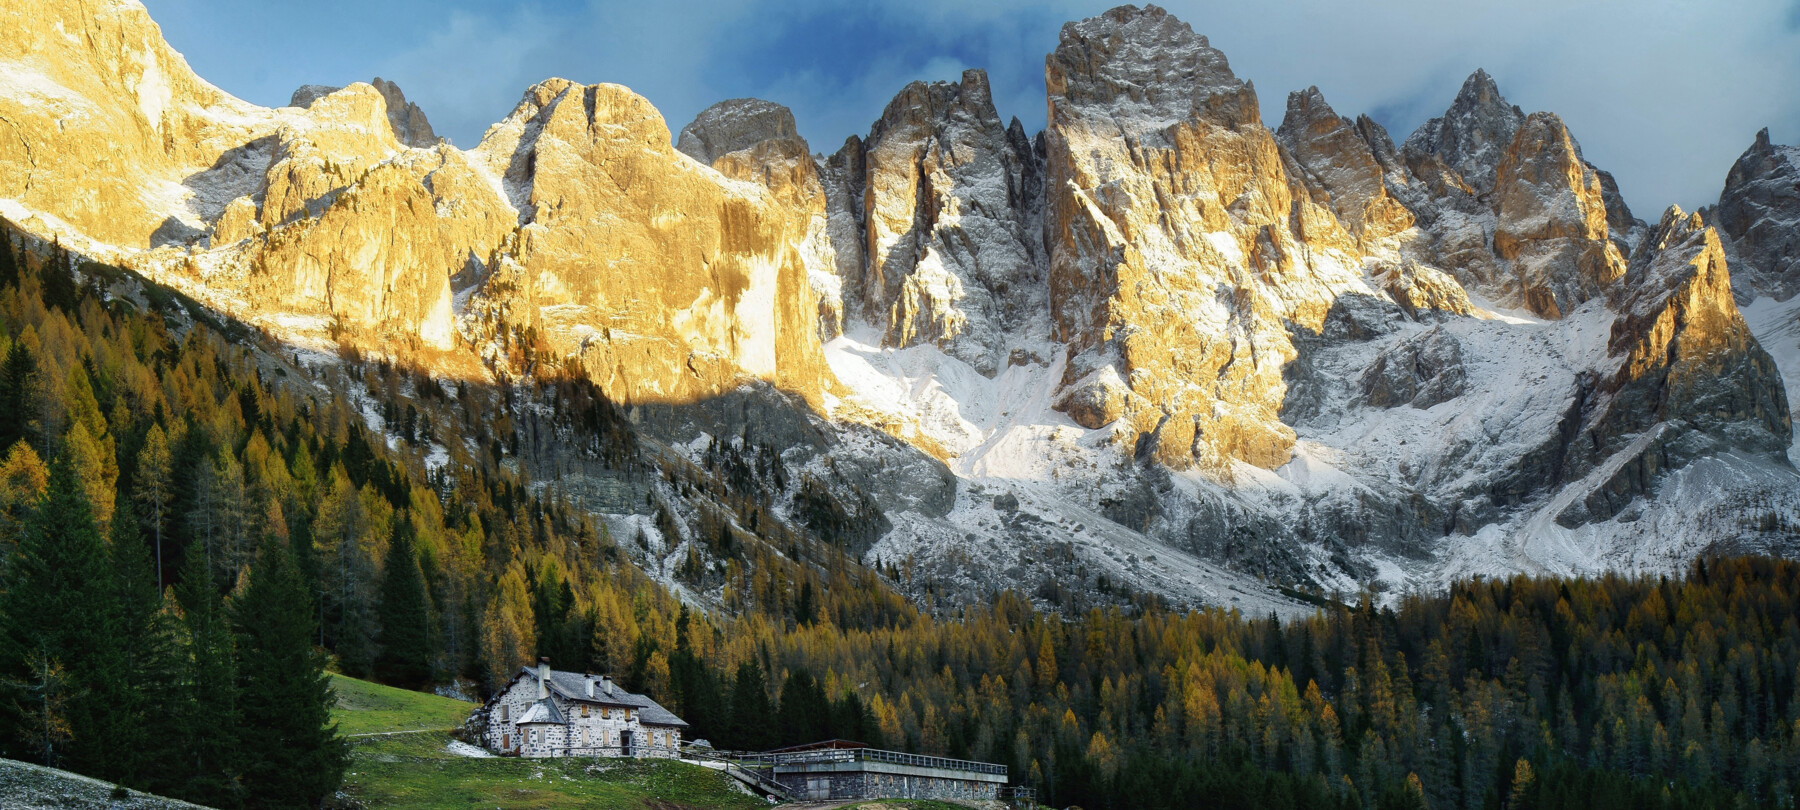 Wat is er in 3 dagen in Trentino te zien: lente en zomer